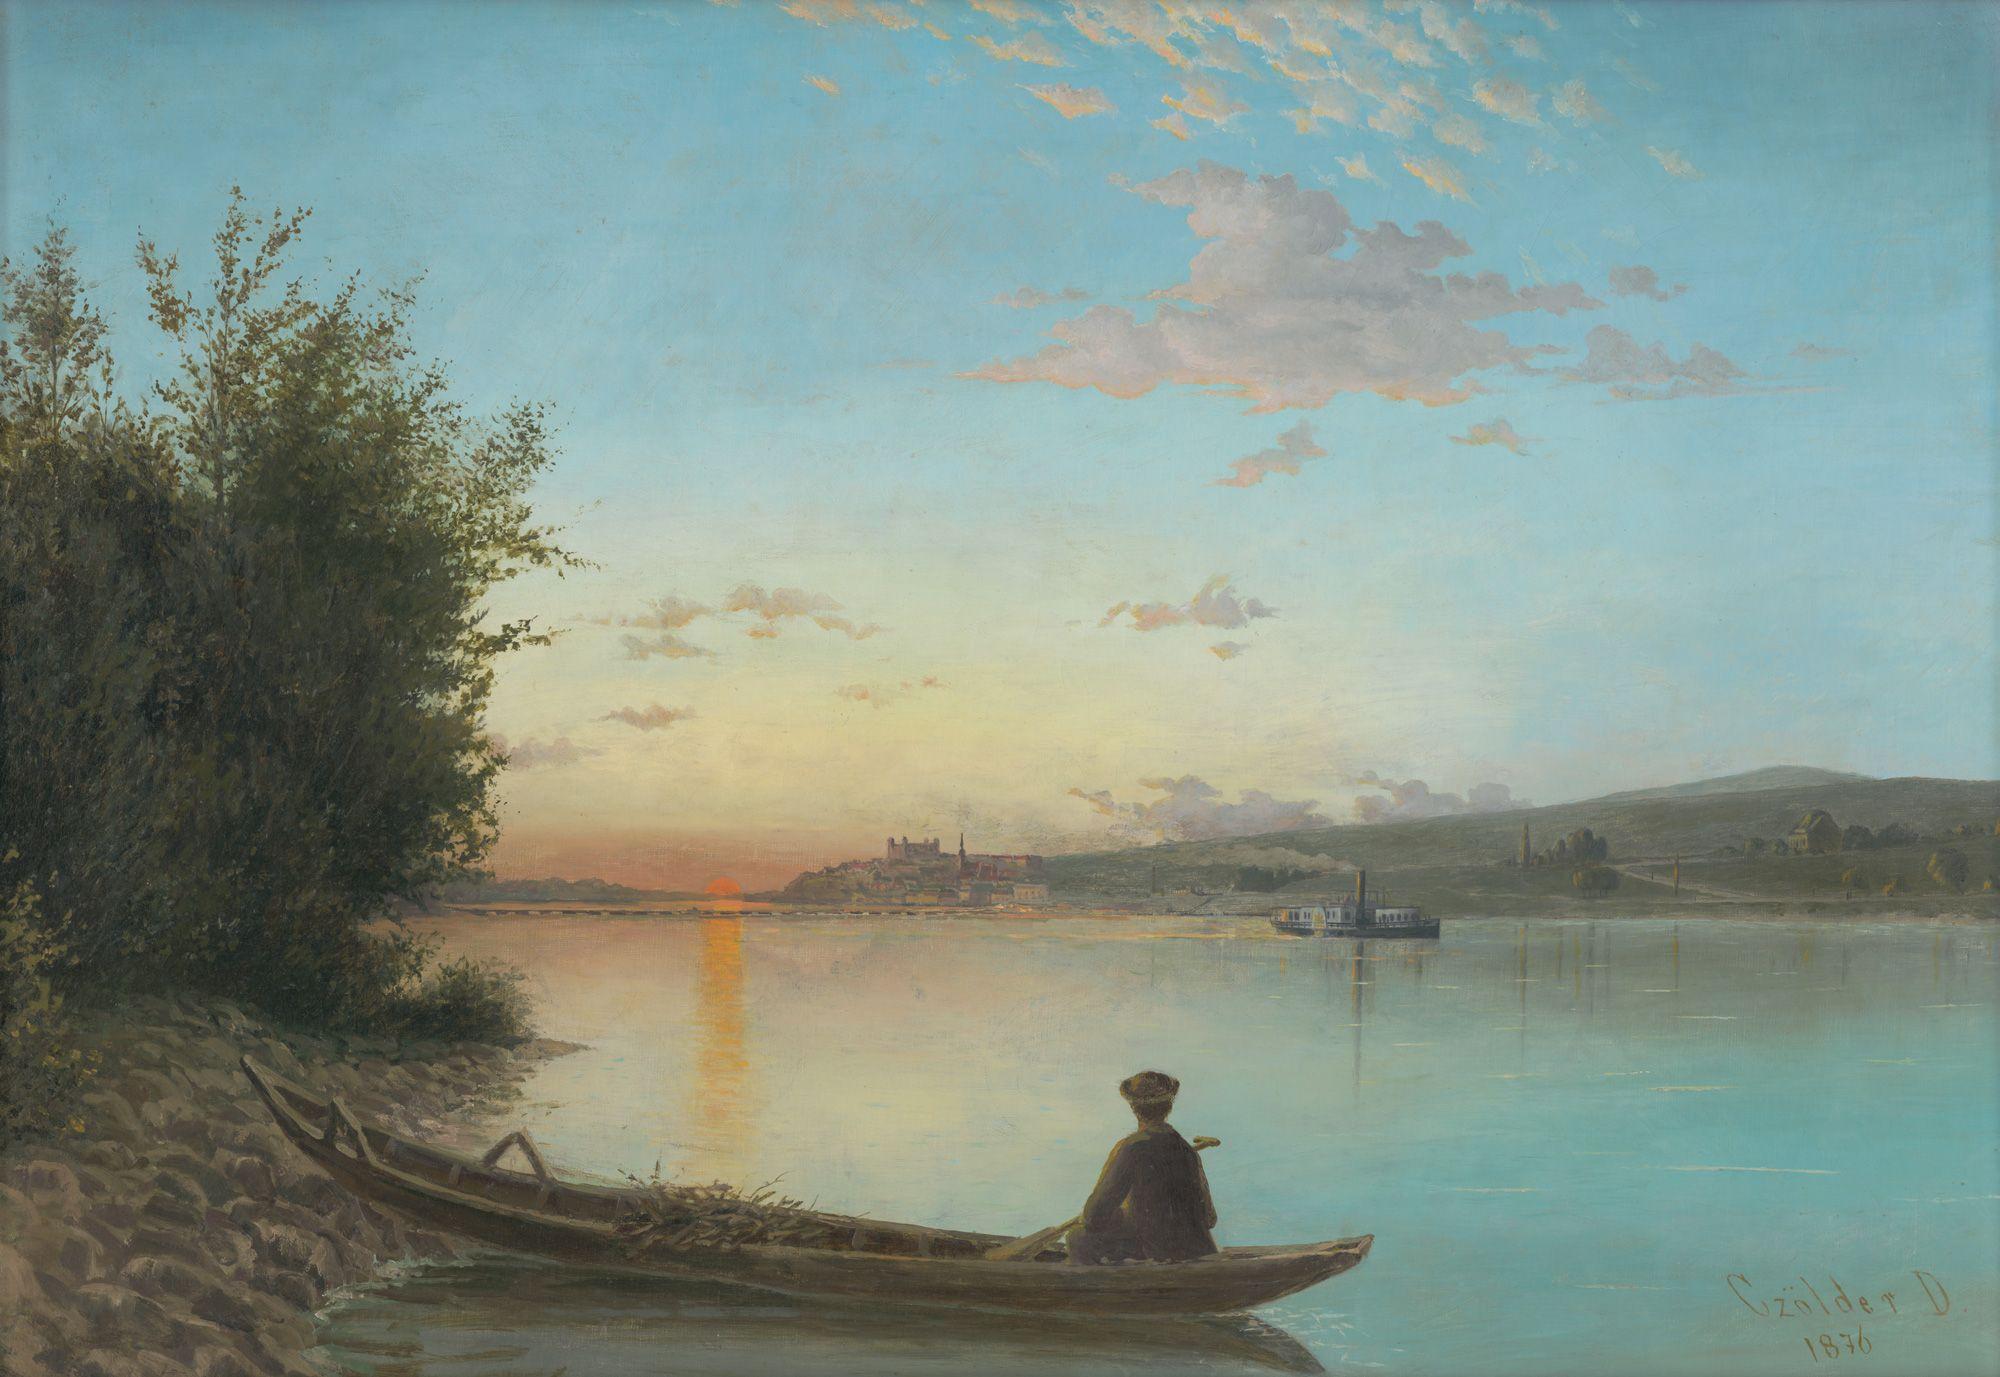 Neznámy autor: Bratislava-západ slnka. 1876 (?), olej na plátne, 58 x 86 cm.